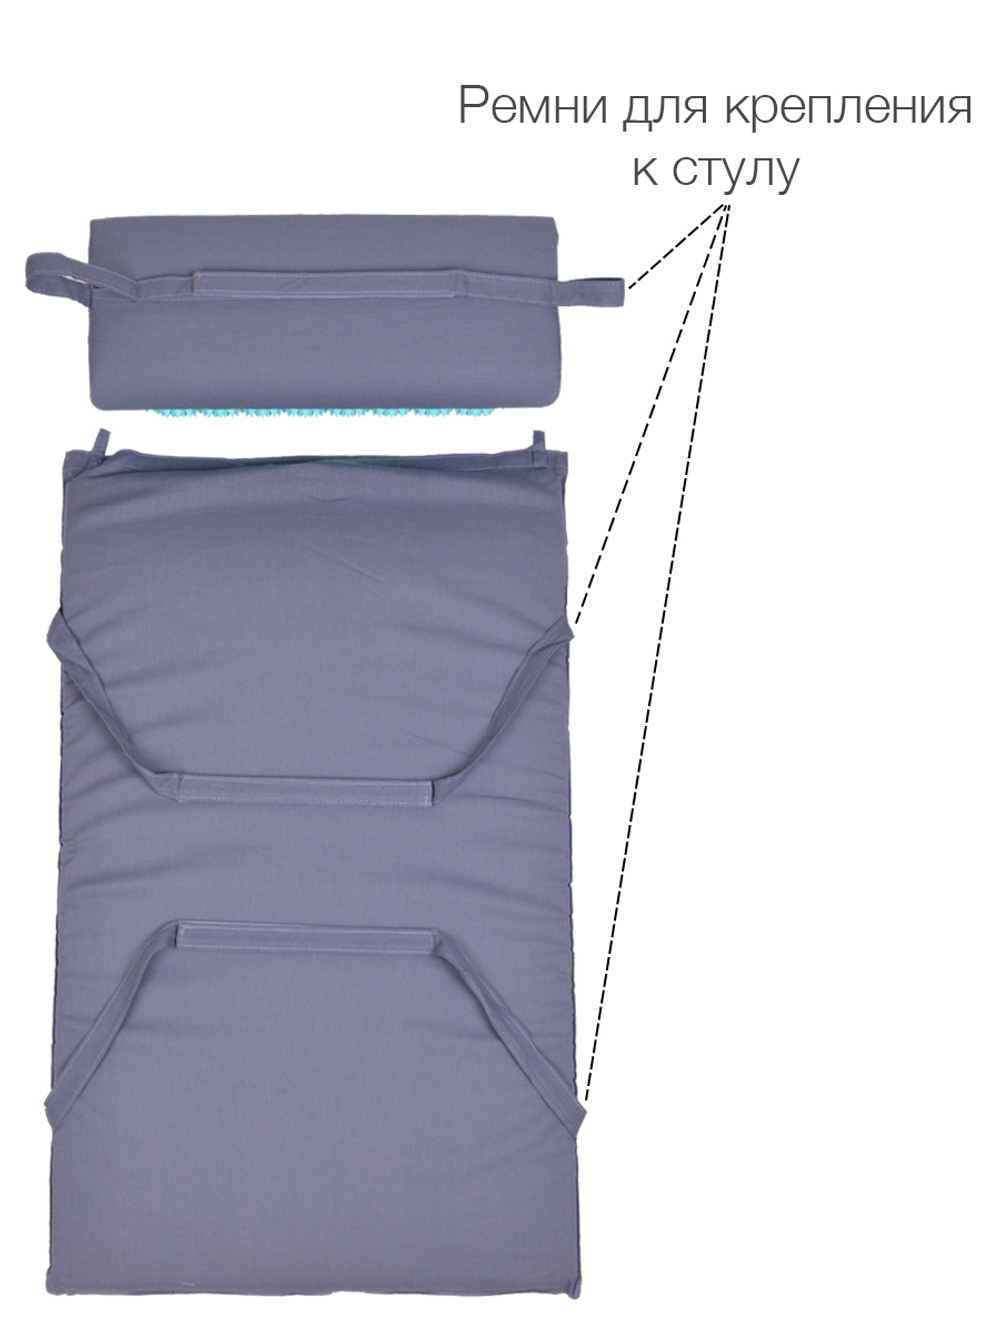 Набор массажный акупунктурный коврик + подушка Comfox (серо-голубой)